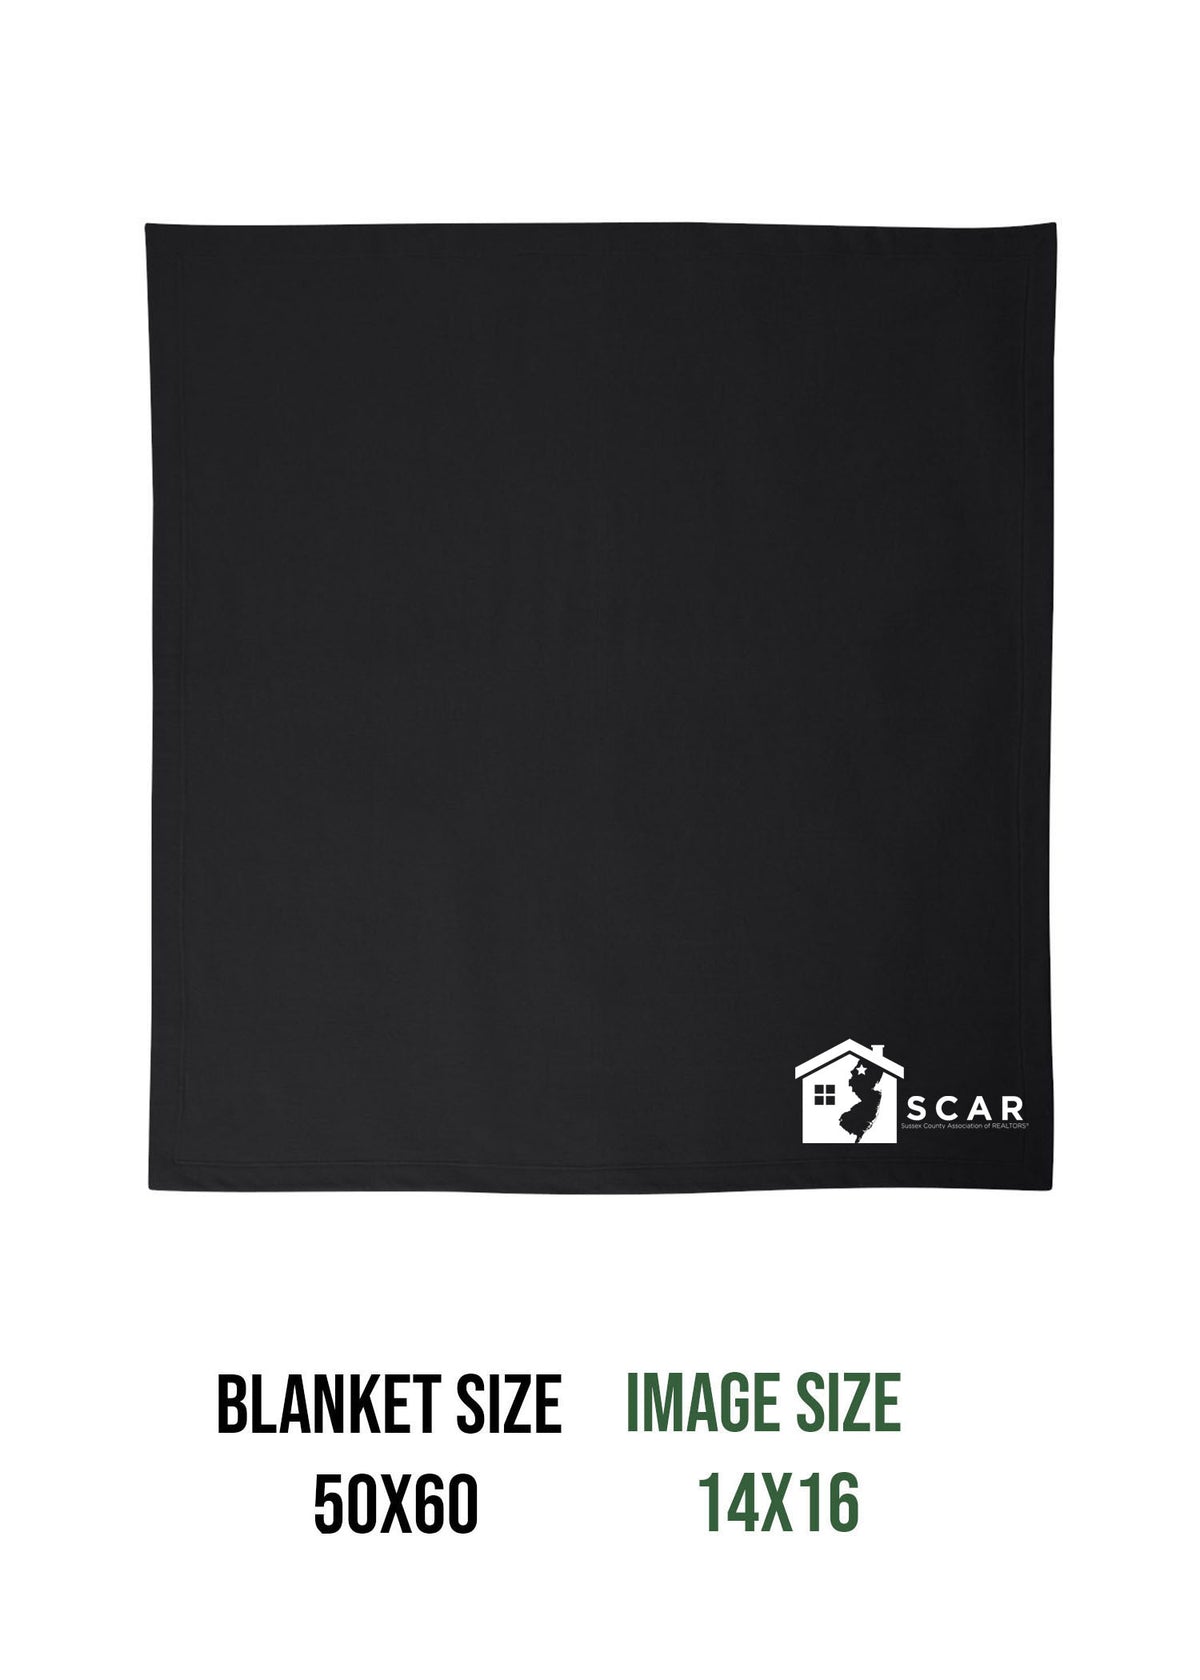 SCAR Blanket Design 2